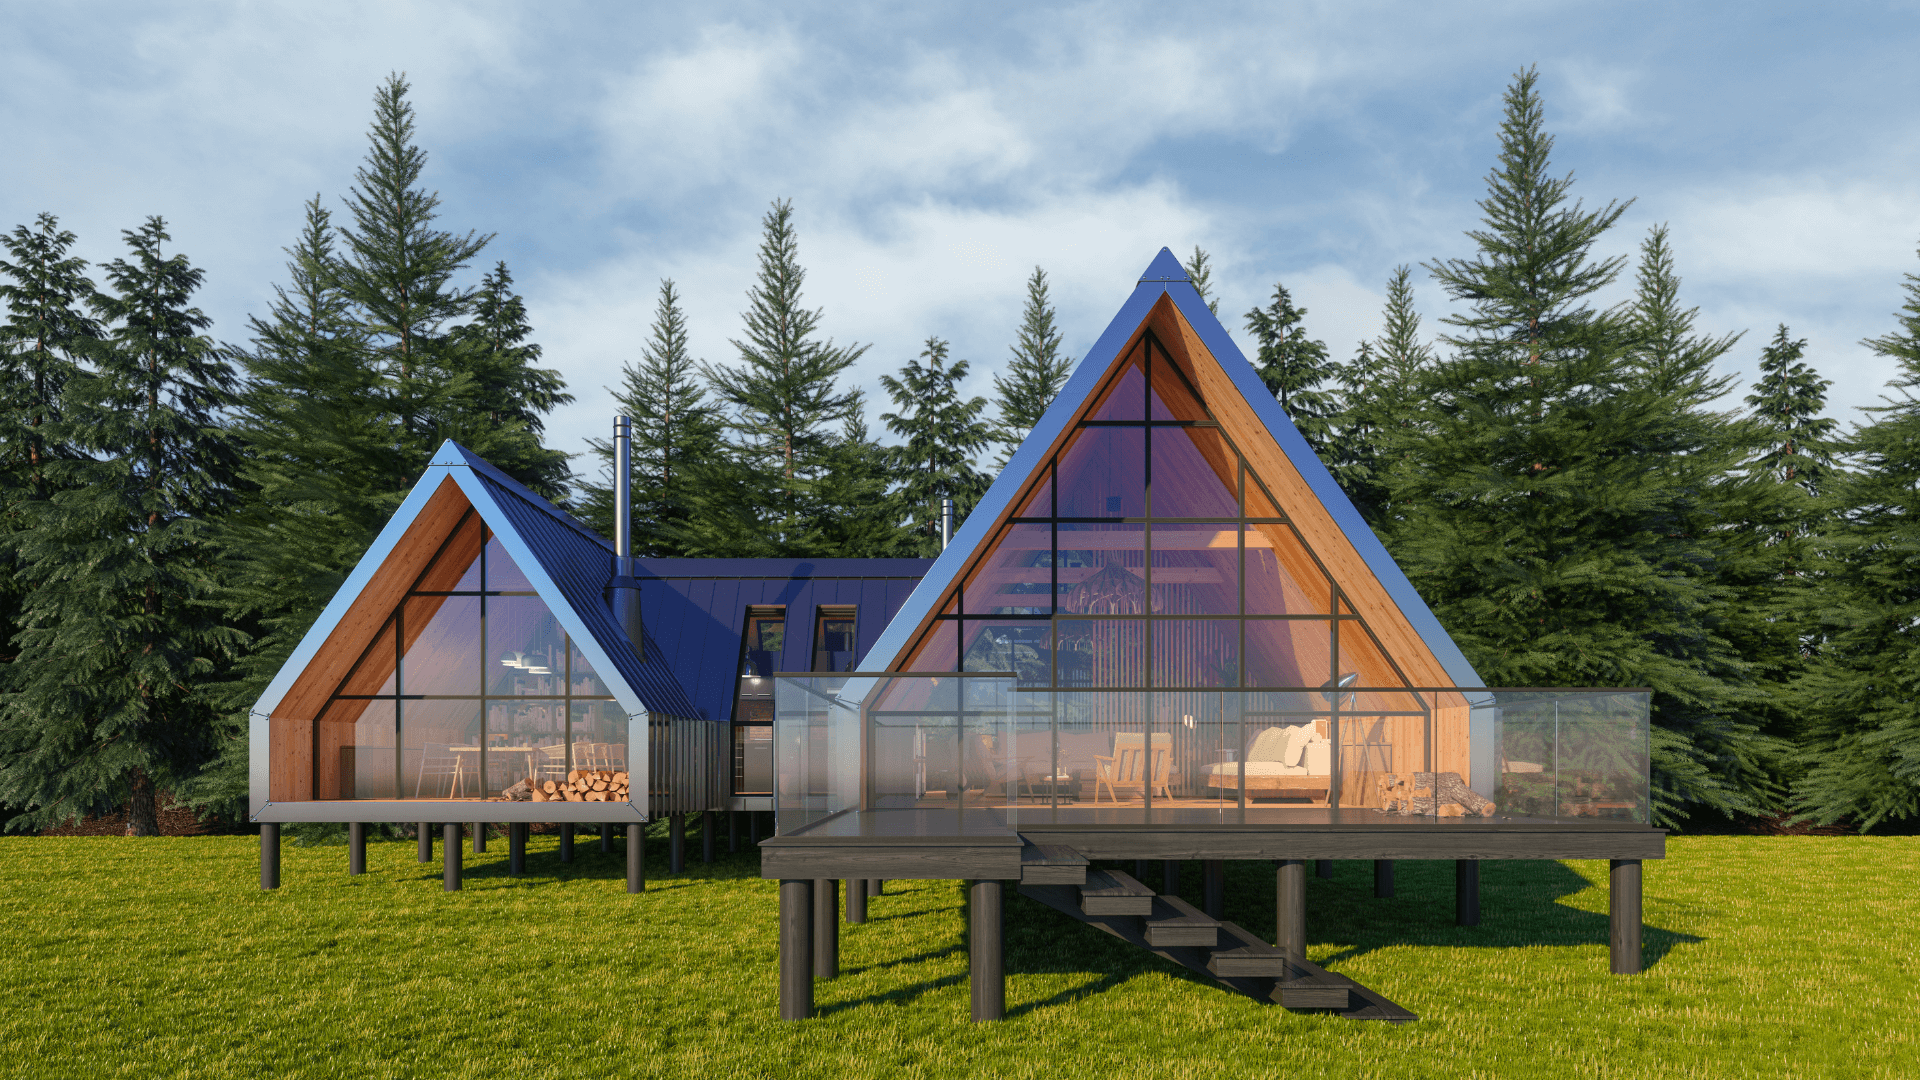 Ein Tiny House, umgeben von Bäumen und grüner Landschaft, repräsentiert die minimalistische und platzsparende Lebensweise im modernen Architekturkonzept.